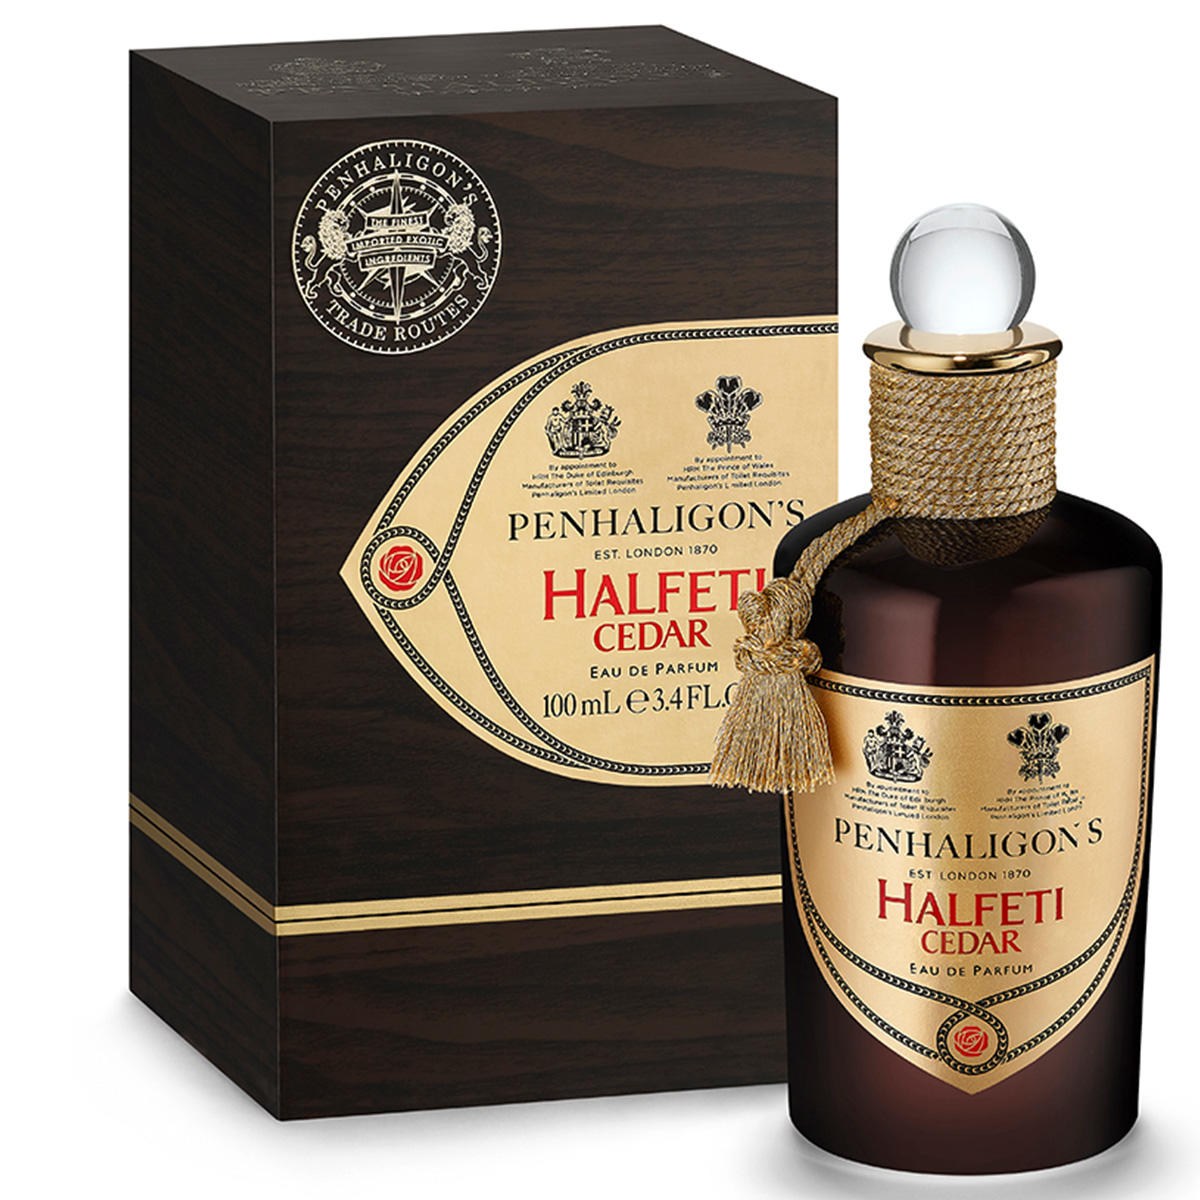 PENHALIGON'S Halfeti Cedar Eau de Parfum 100 ml - 2